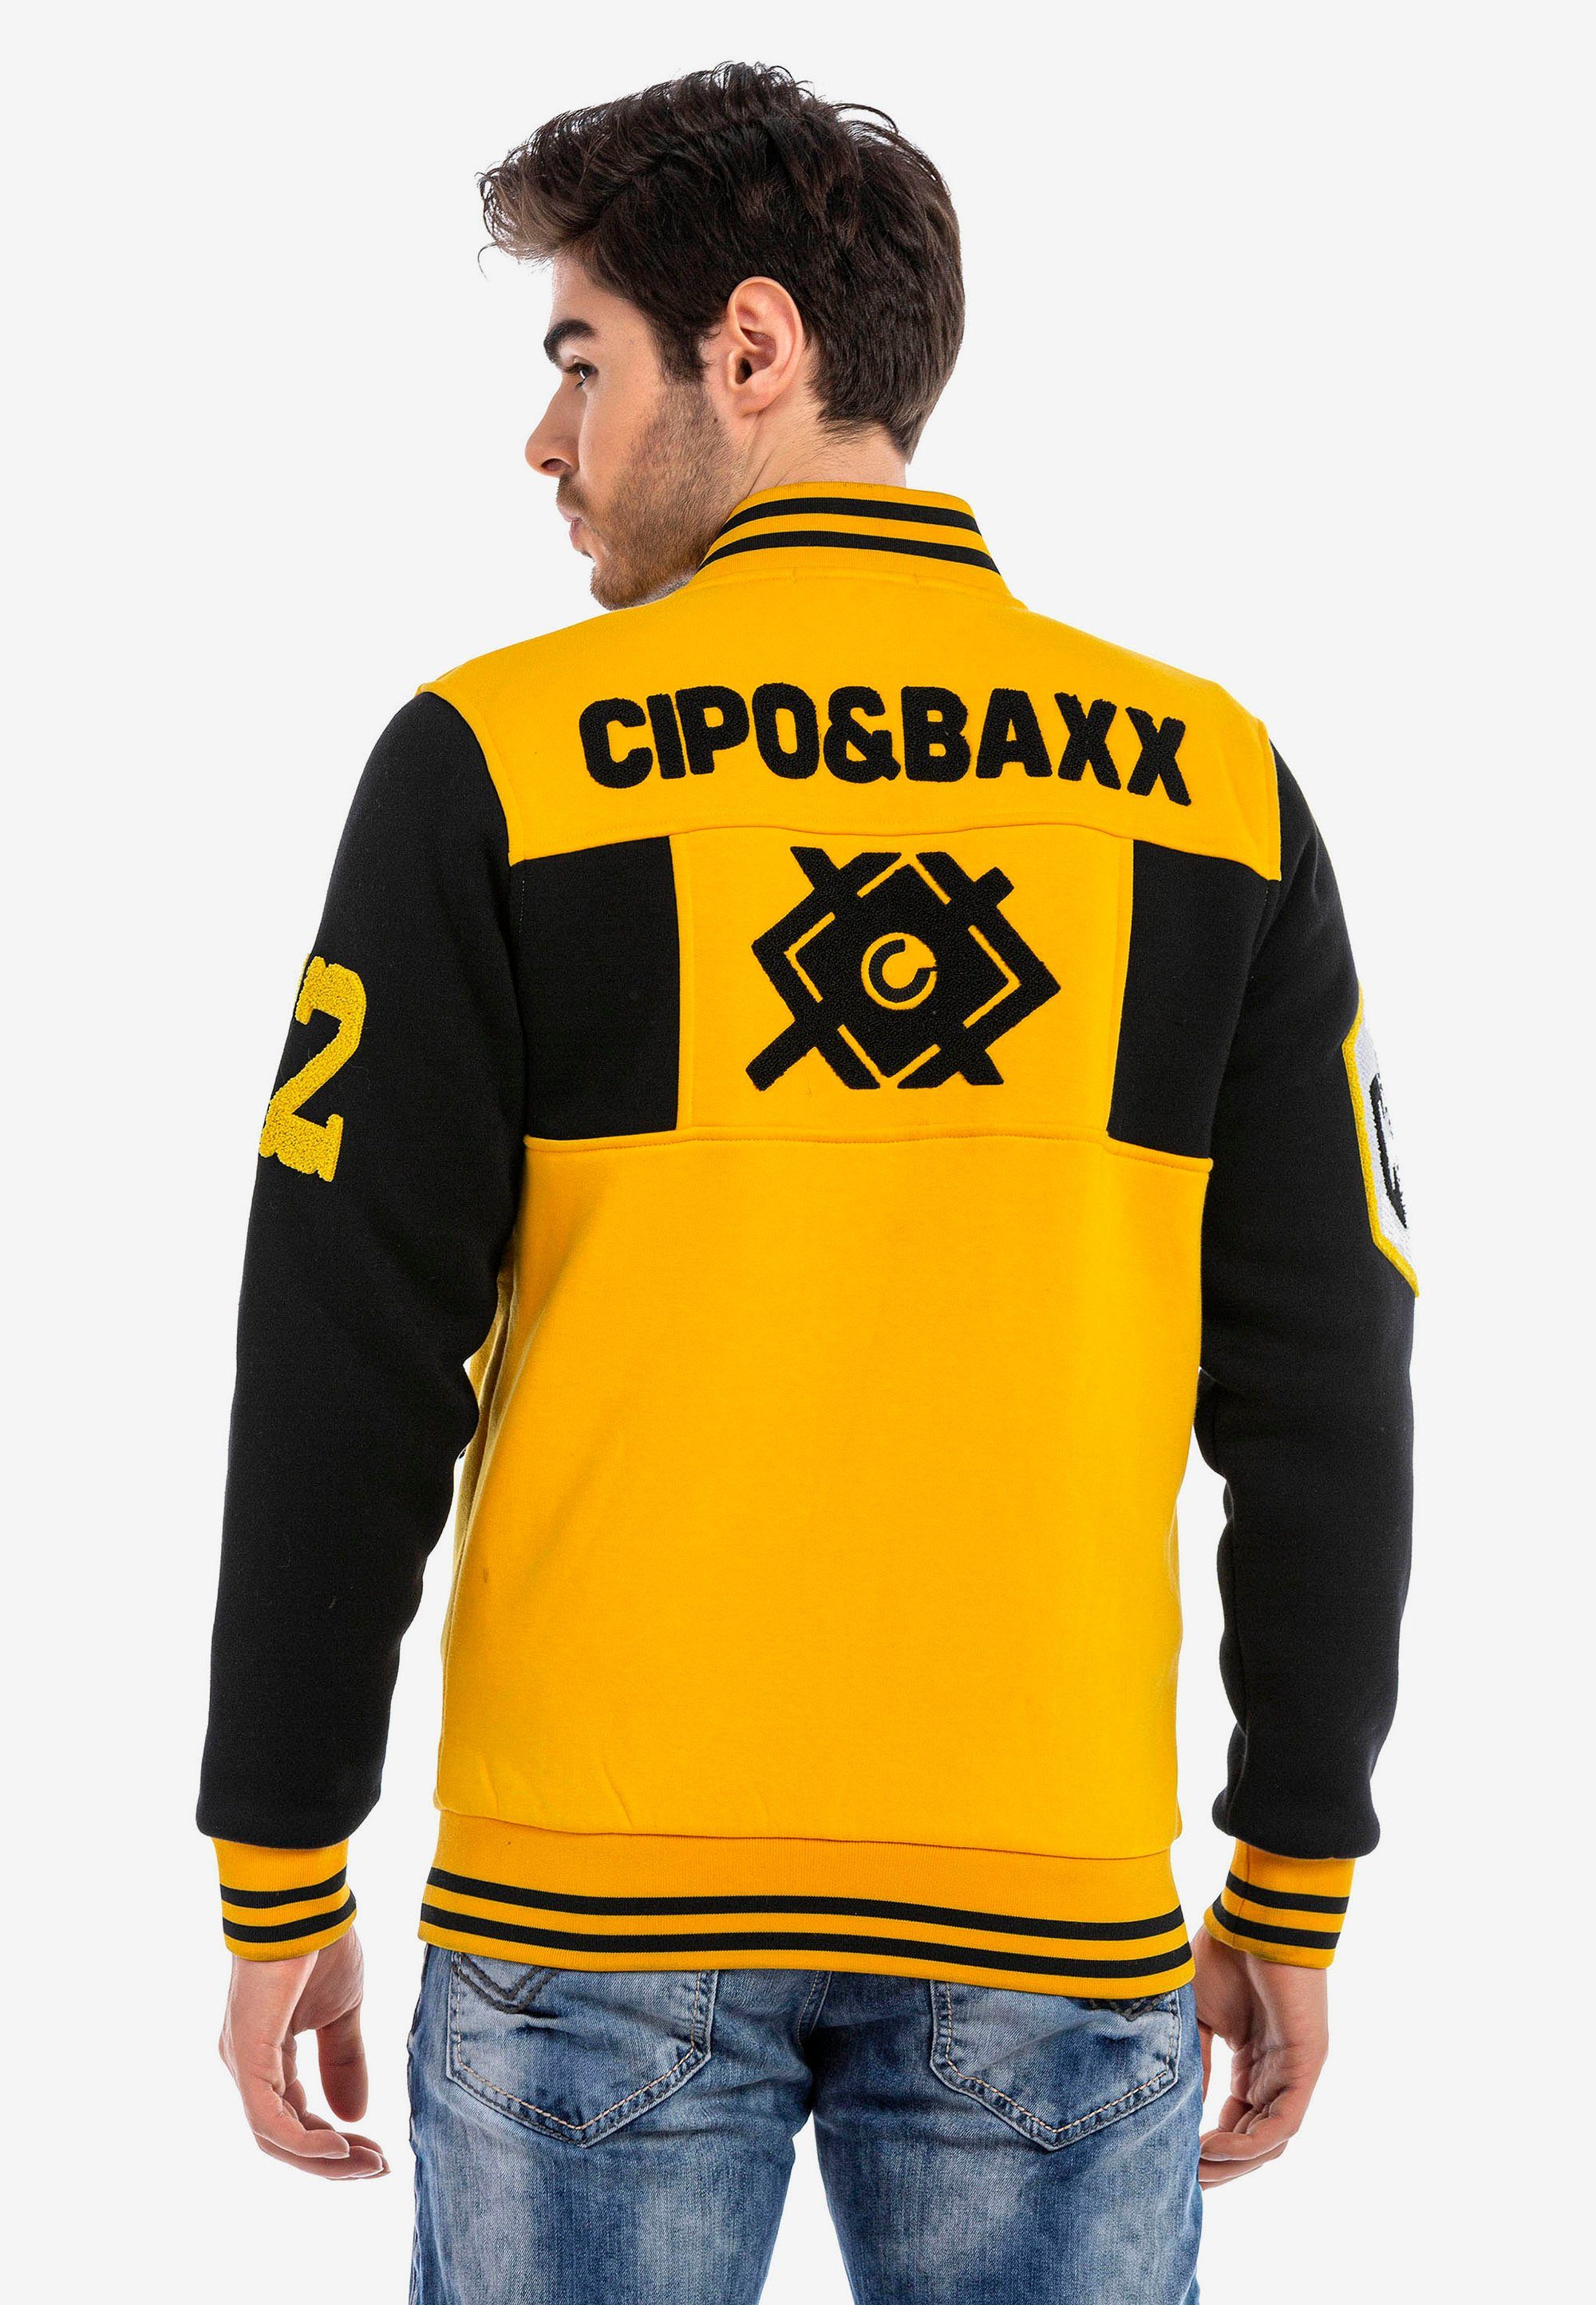 gelb-schwarz Baxx sportlichem Cipo & Sweatjacke Design in